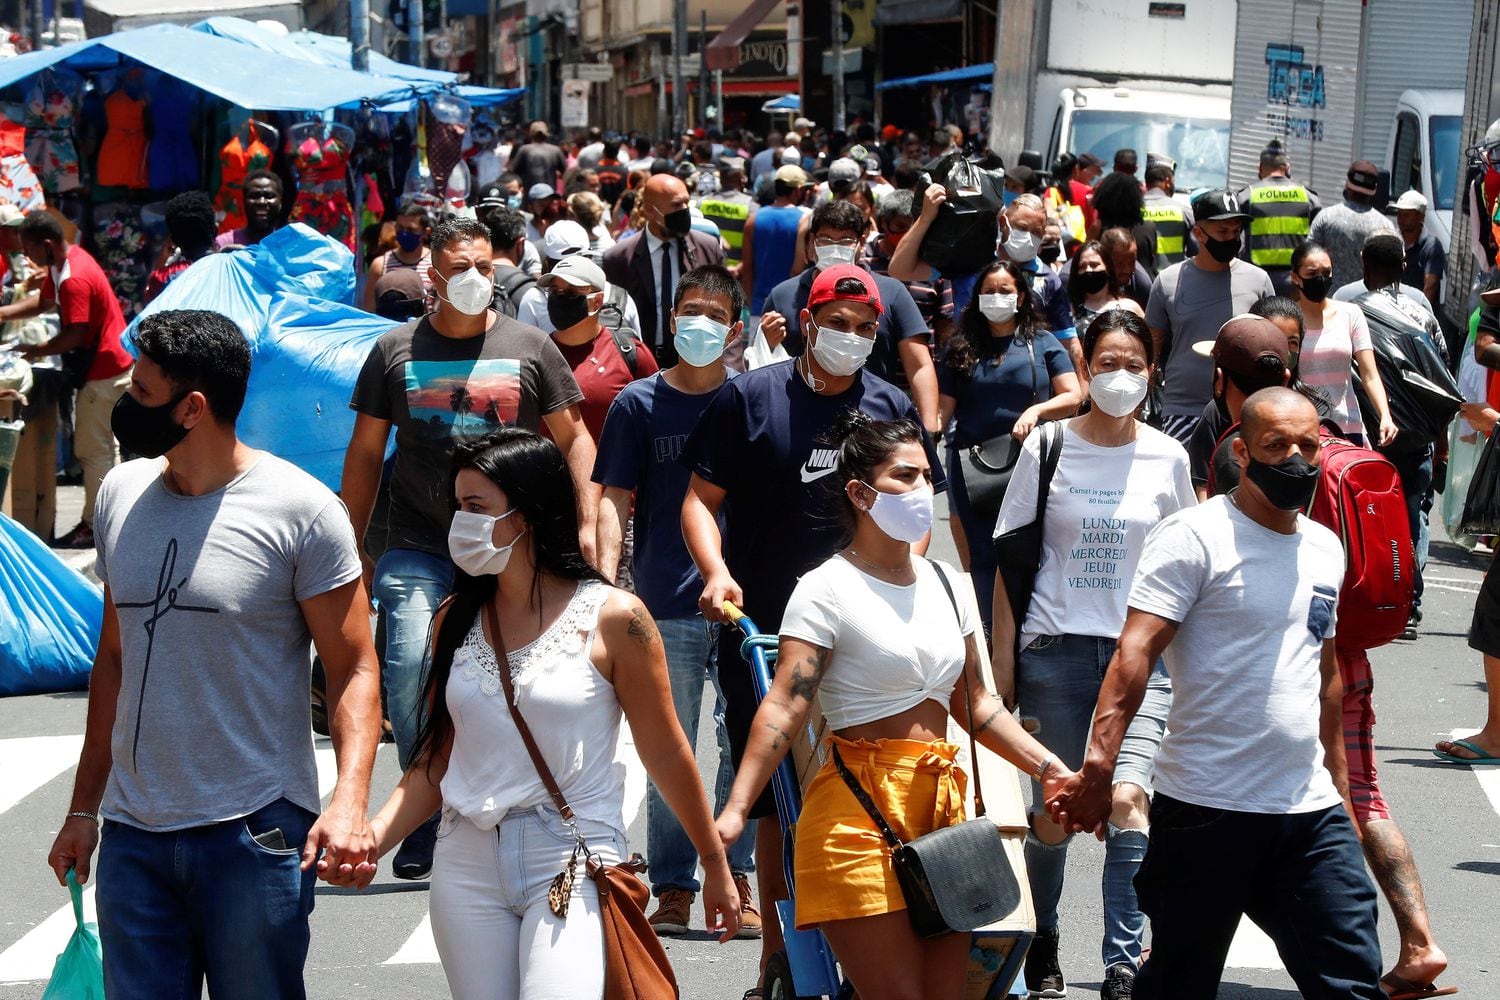 Dezenas de pessoas caminham no centro de São Paulo no dia 18 de dezembro.